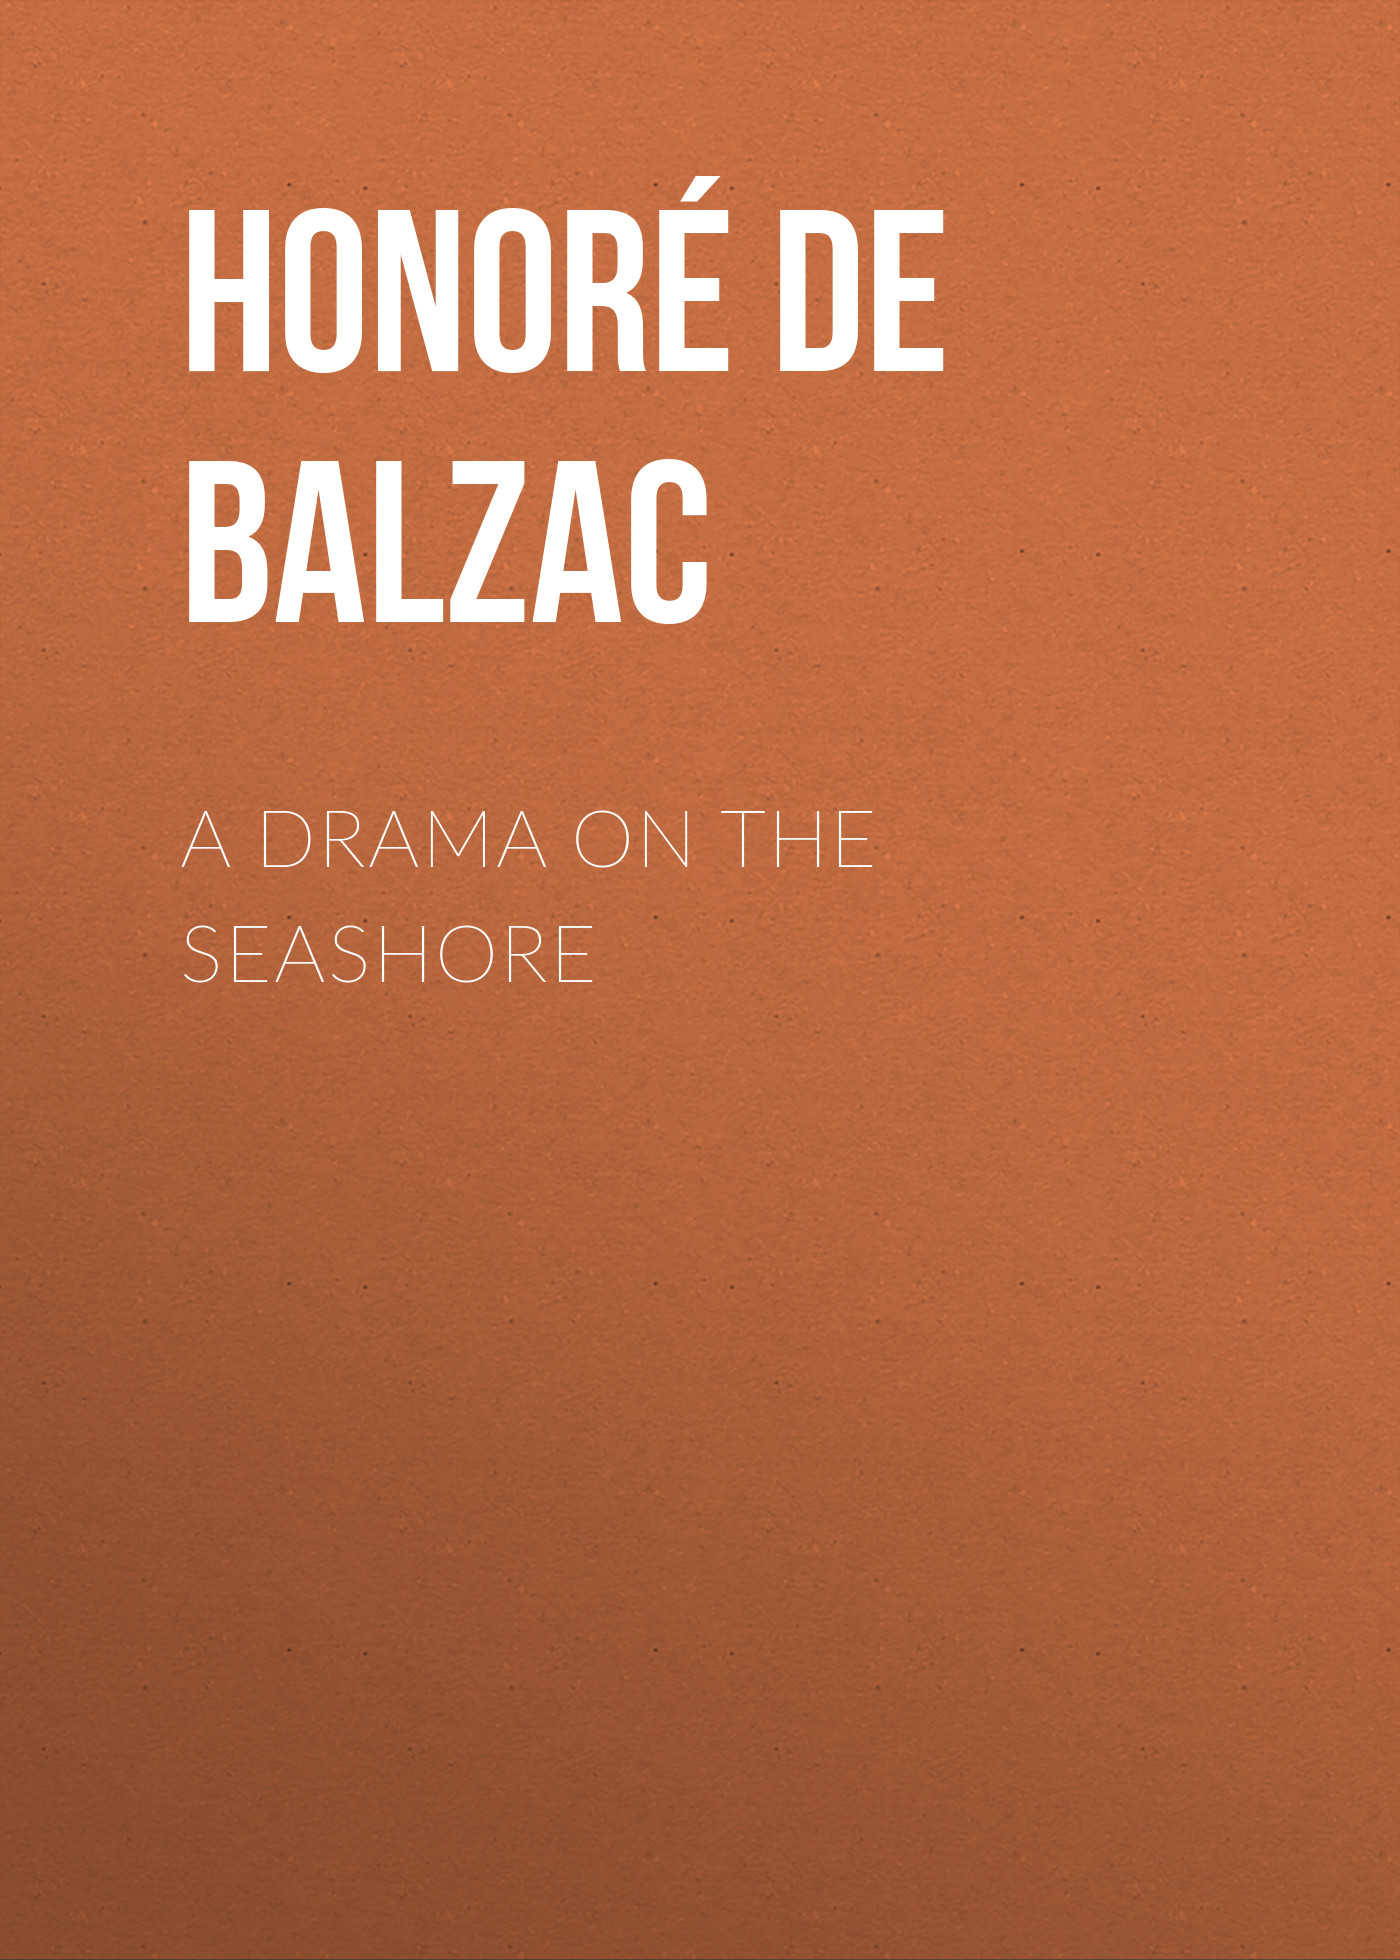 Книга A Drama on the Seashore из серии , созданная Honoré Balzac, может относится к жанру Литература 19 века, Зарубежная старинная литература, Зарубежная классика. Стоимость электронной книги A Drama on the Seashore с идентификатором 25021259 составляет 0 руб.